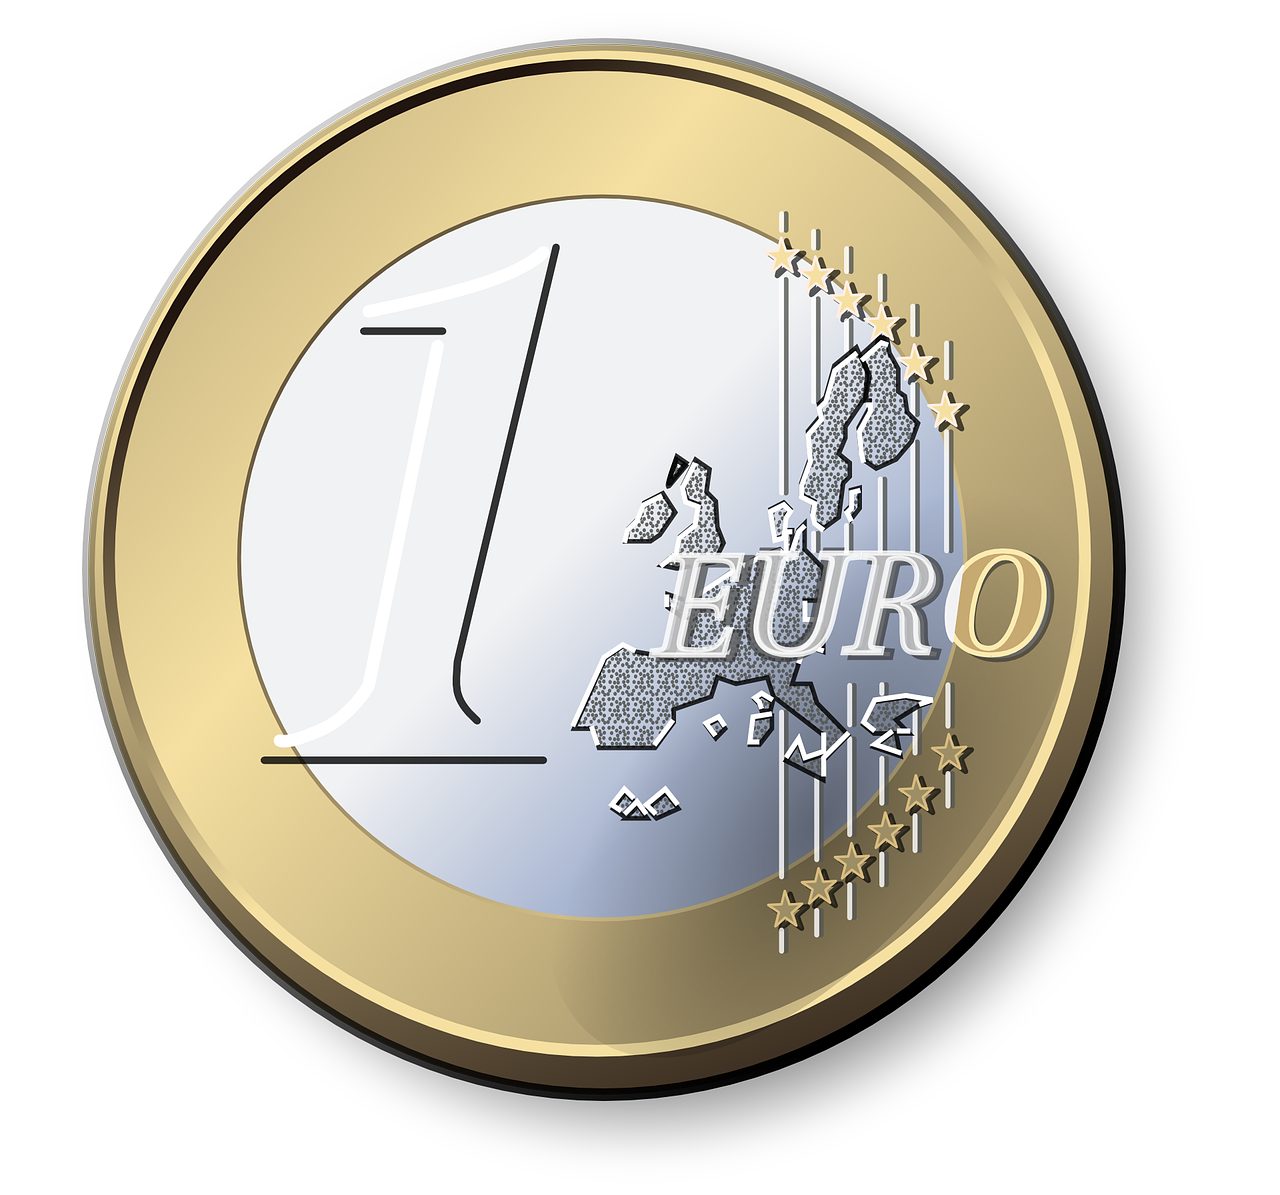 Euron? 3